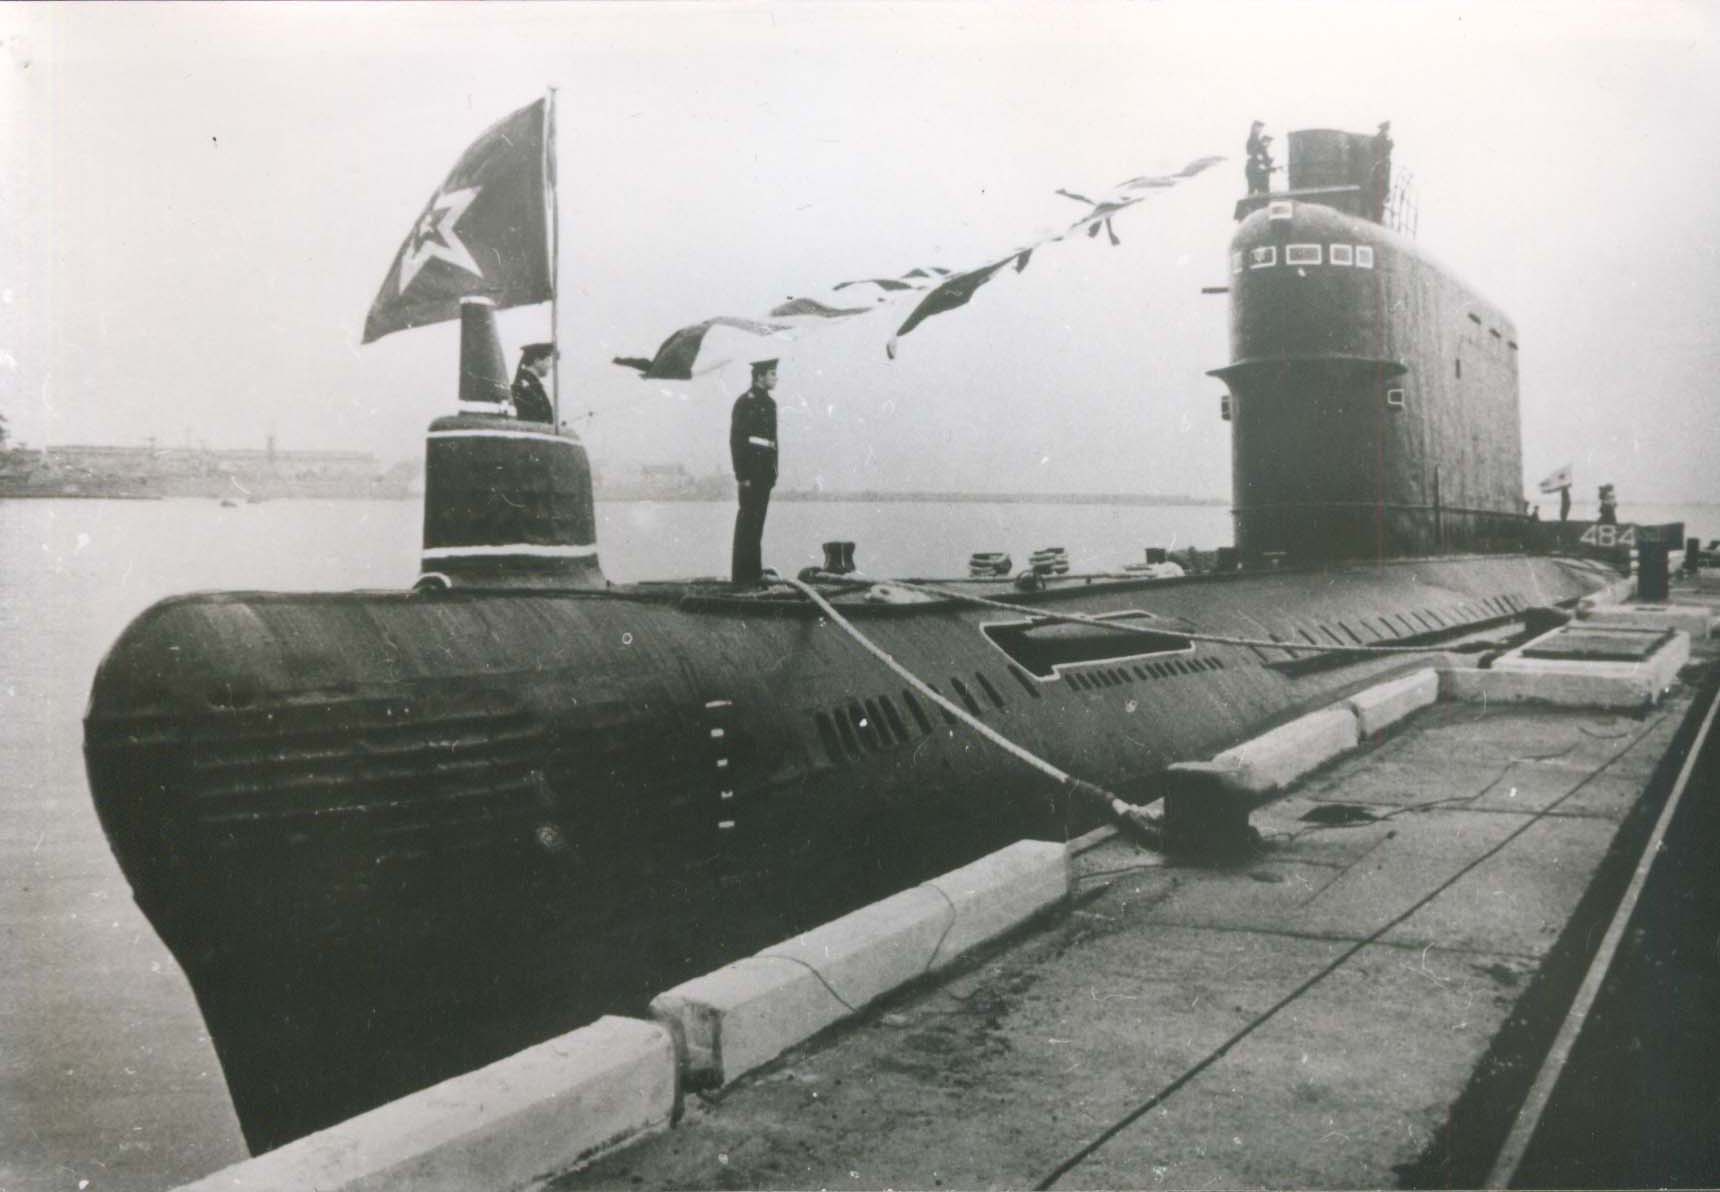 Пл пр т. АПЛ проекта 629а. Подводная лодка пр 629. Дизель-электрическая подводная лодки СССР. Подводная лодка проект 629 БС 107.